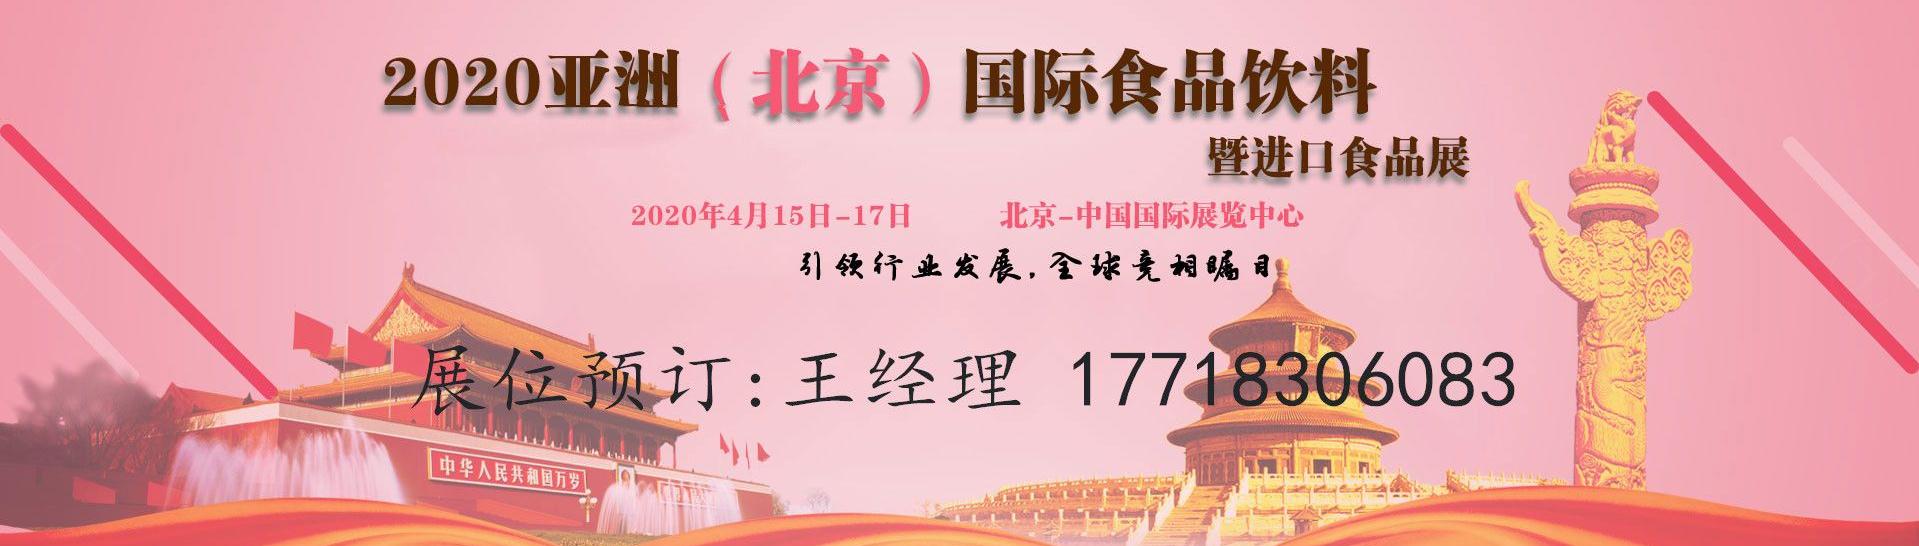 2020第二十三届亚洲(北京)国际食品饮料展览会及进口食品展